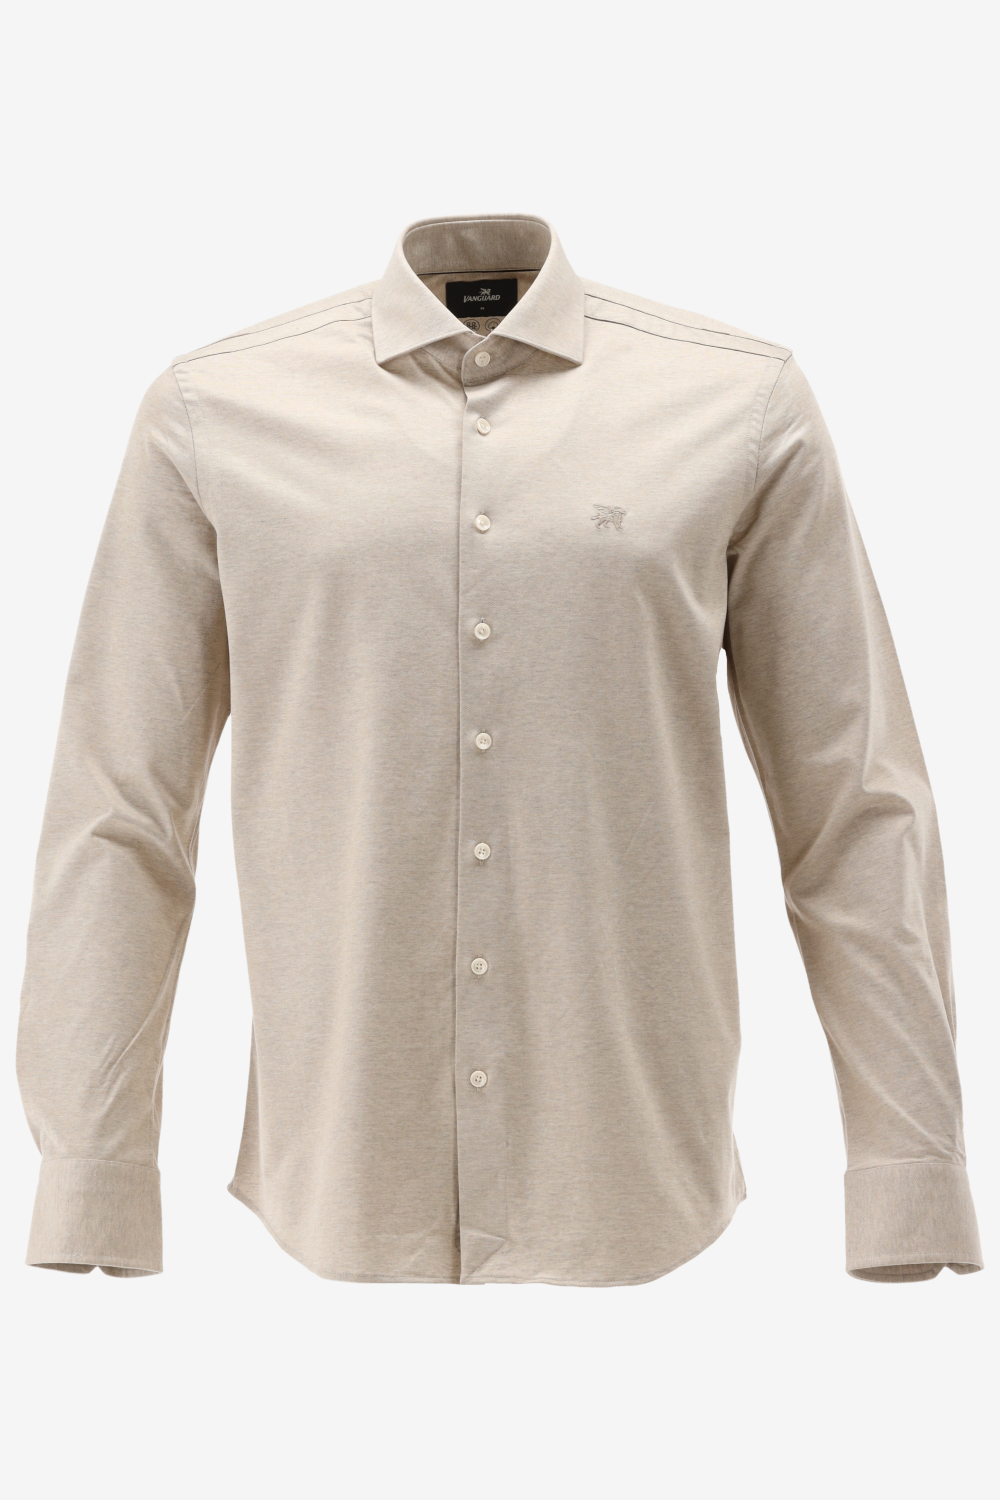 Vanguard - Overhemd Beige - Heren - Maat XXL - Modern-fit